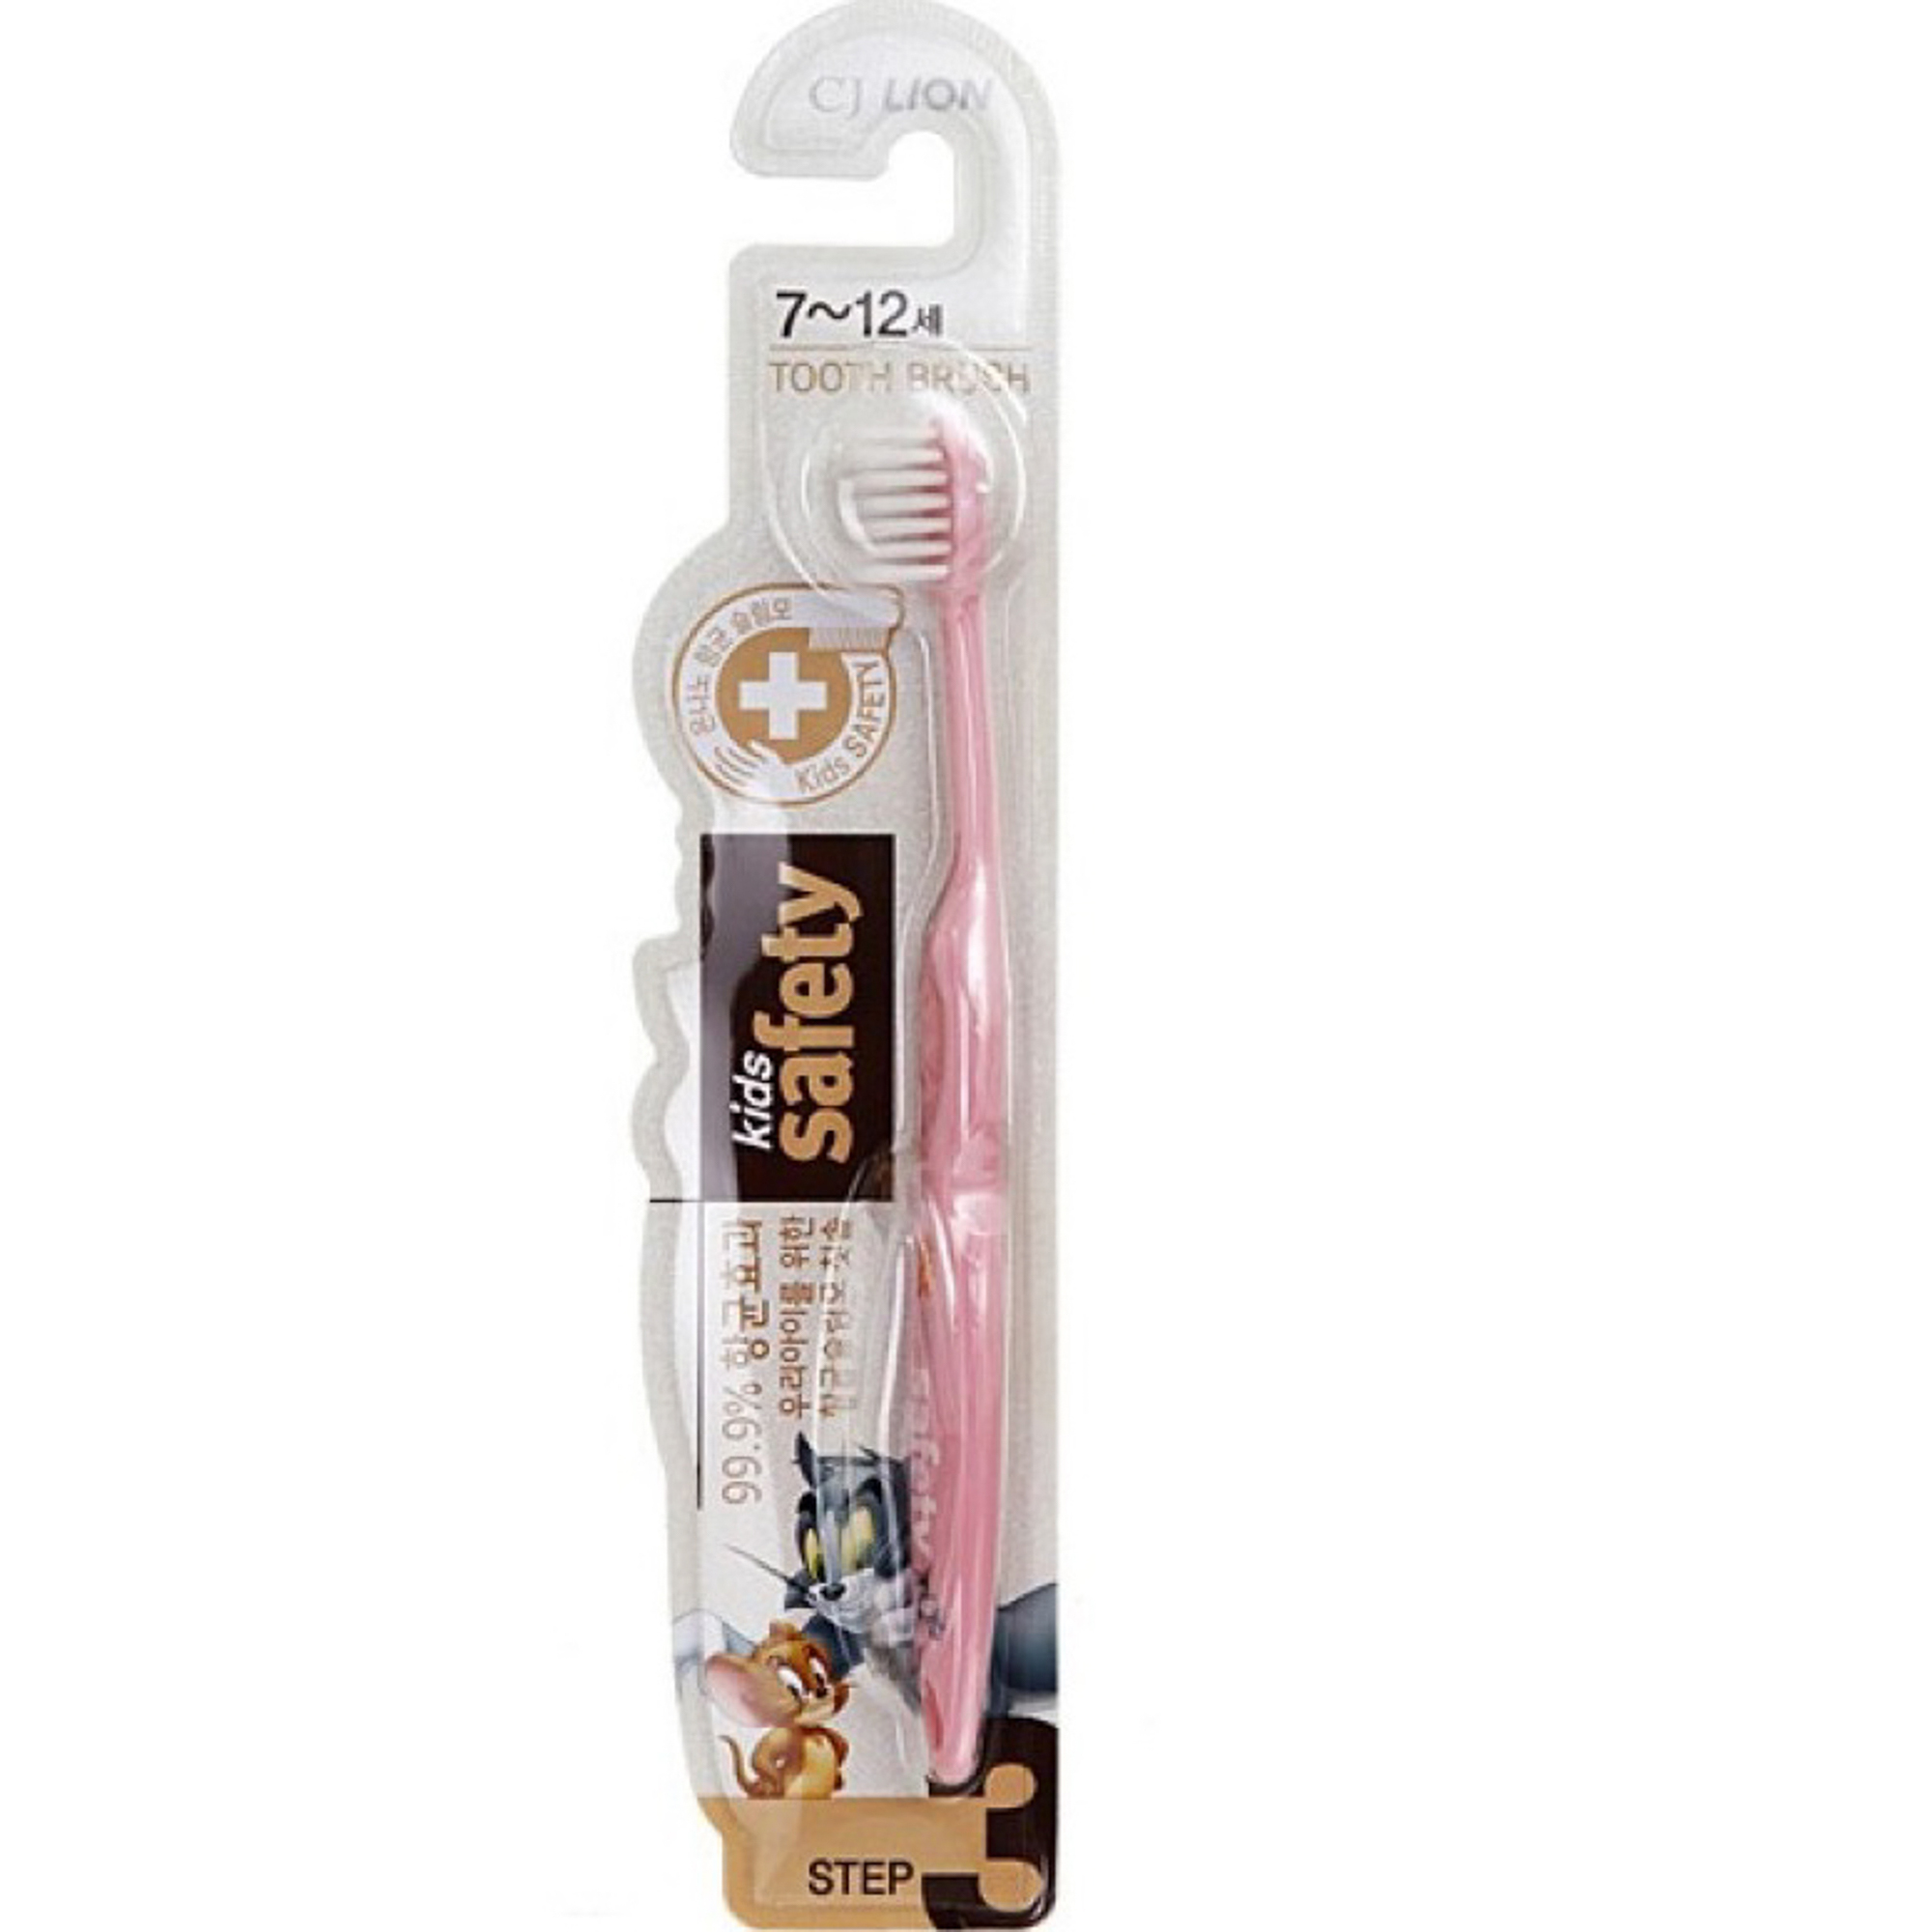 Зубная щетка детская CJ Lion Kids Safe с нано-серебряным покрытием от 7лет зубная щетка детская little mr бамбук 14 × 2 × 2 см